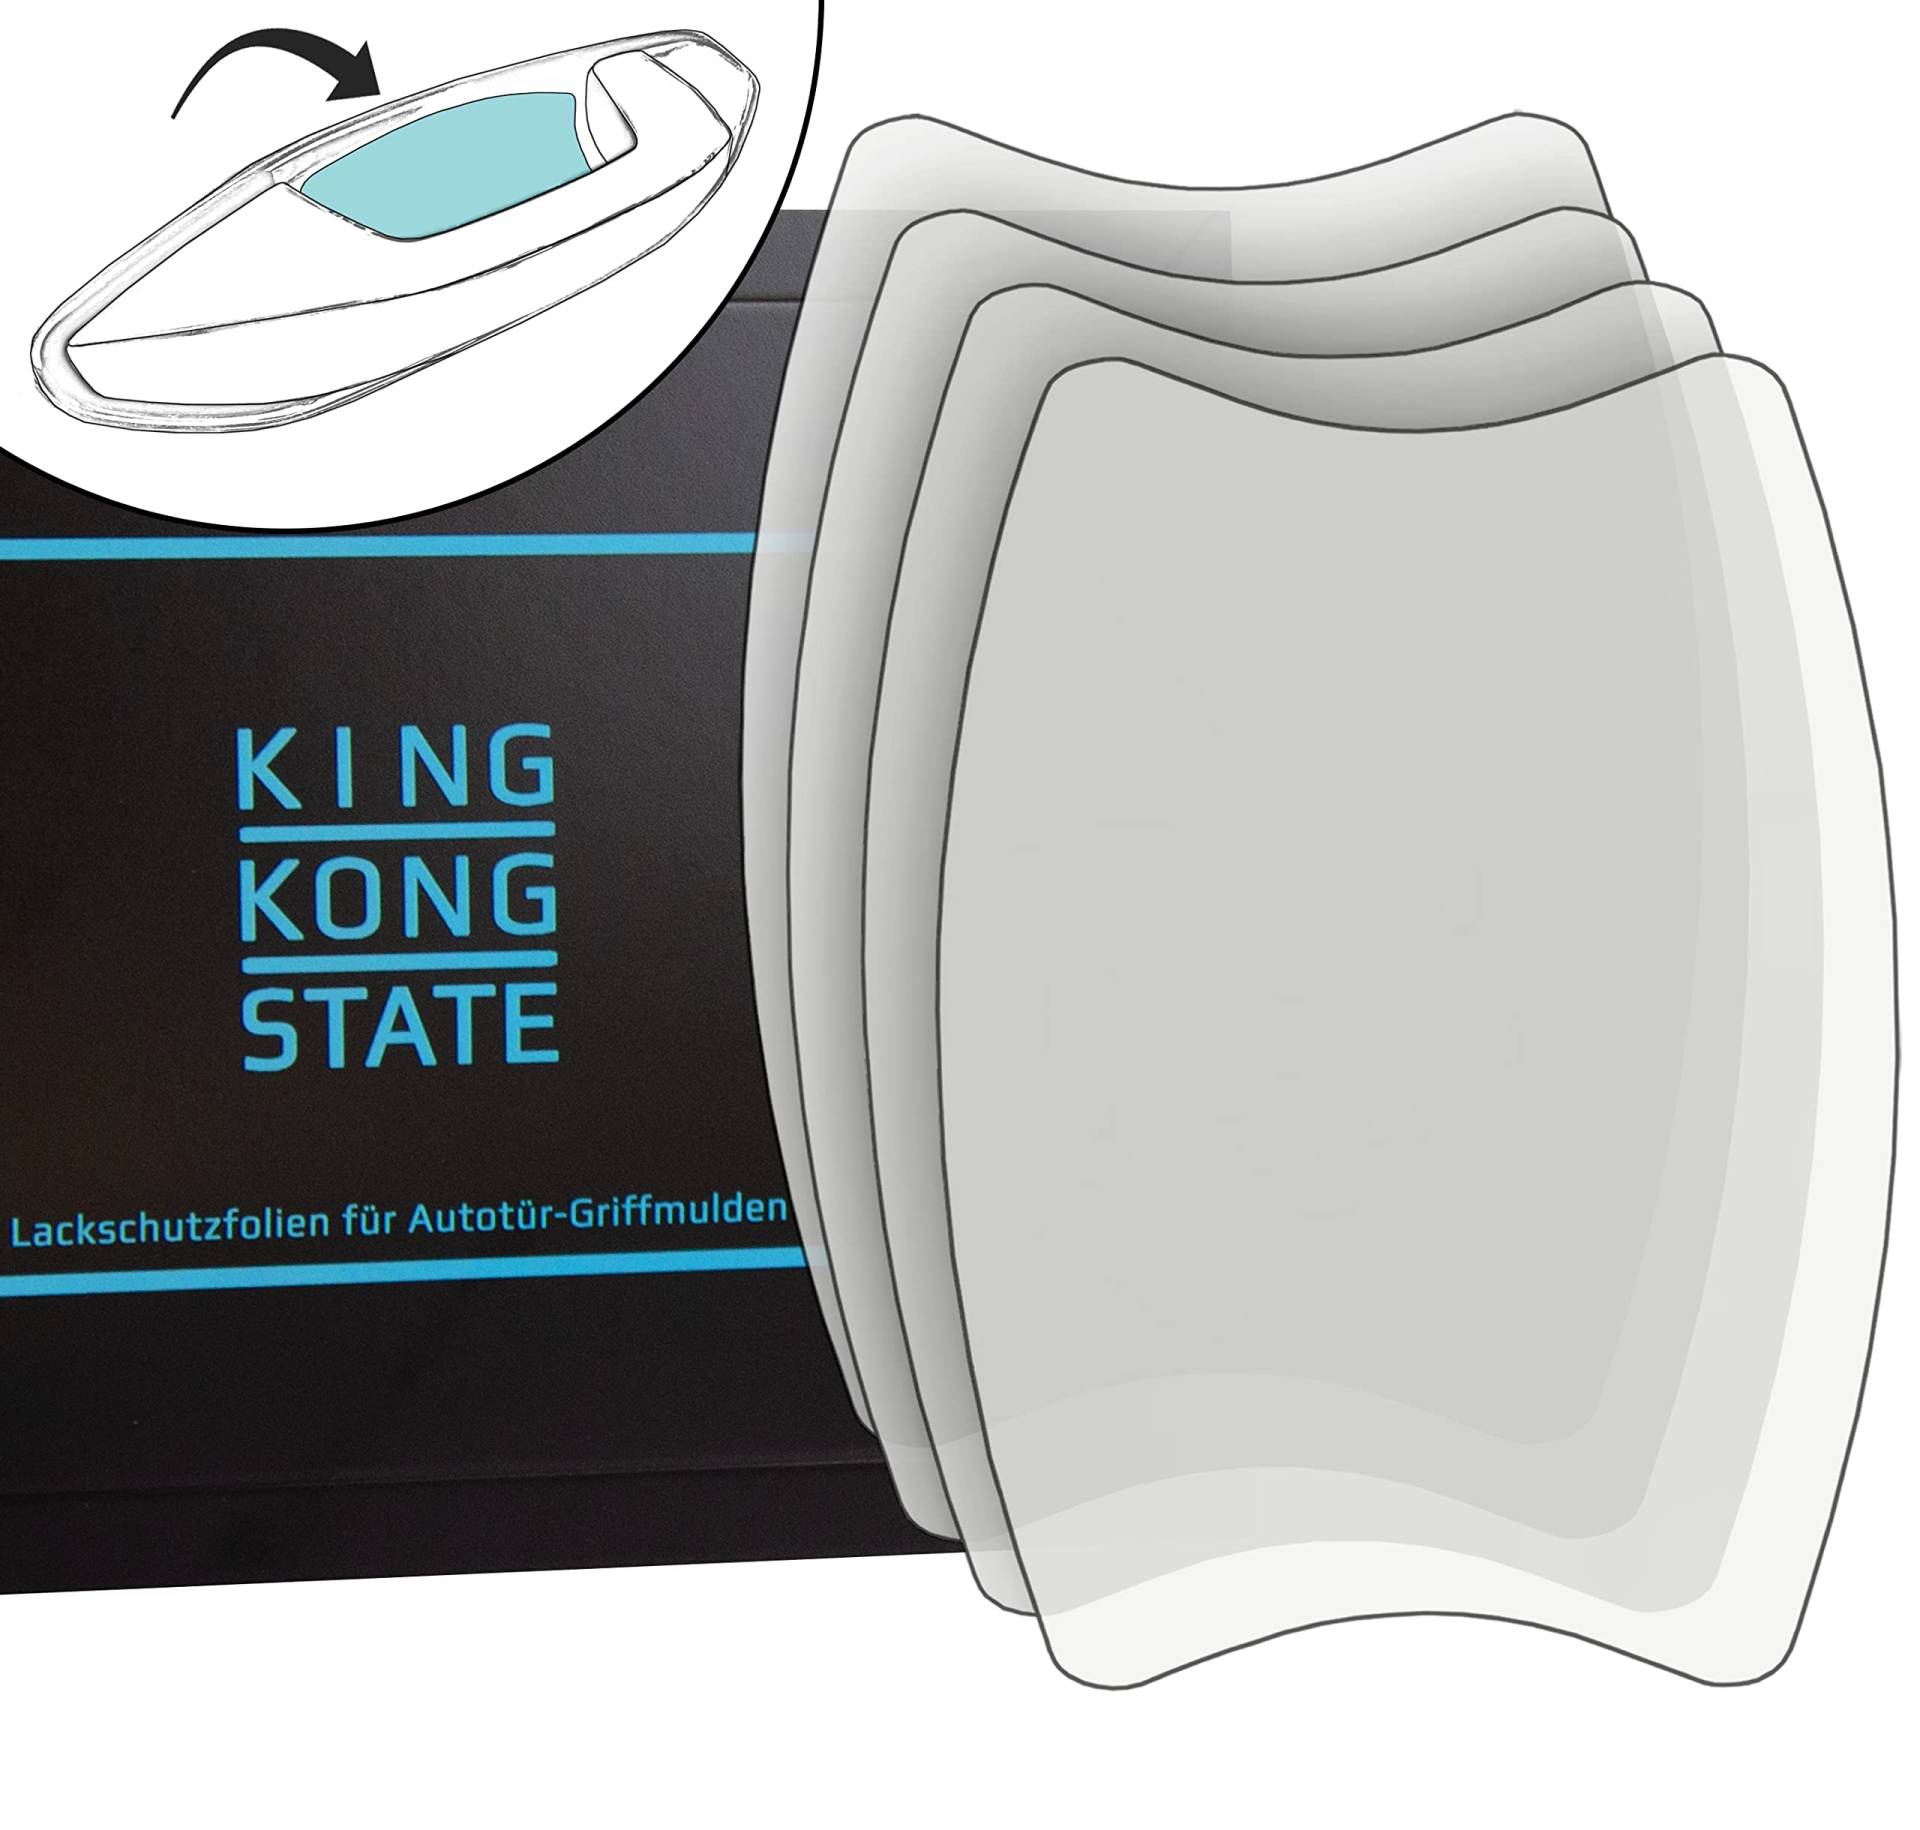 King Kong State Lackschutzfolien-Set für Autotür-Griffmulden - große Griffschalen-Schutzfolien zum Schutz vor Kratzern - transparent von King Kong State